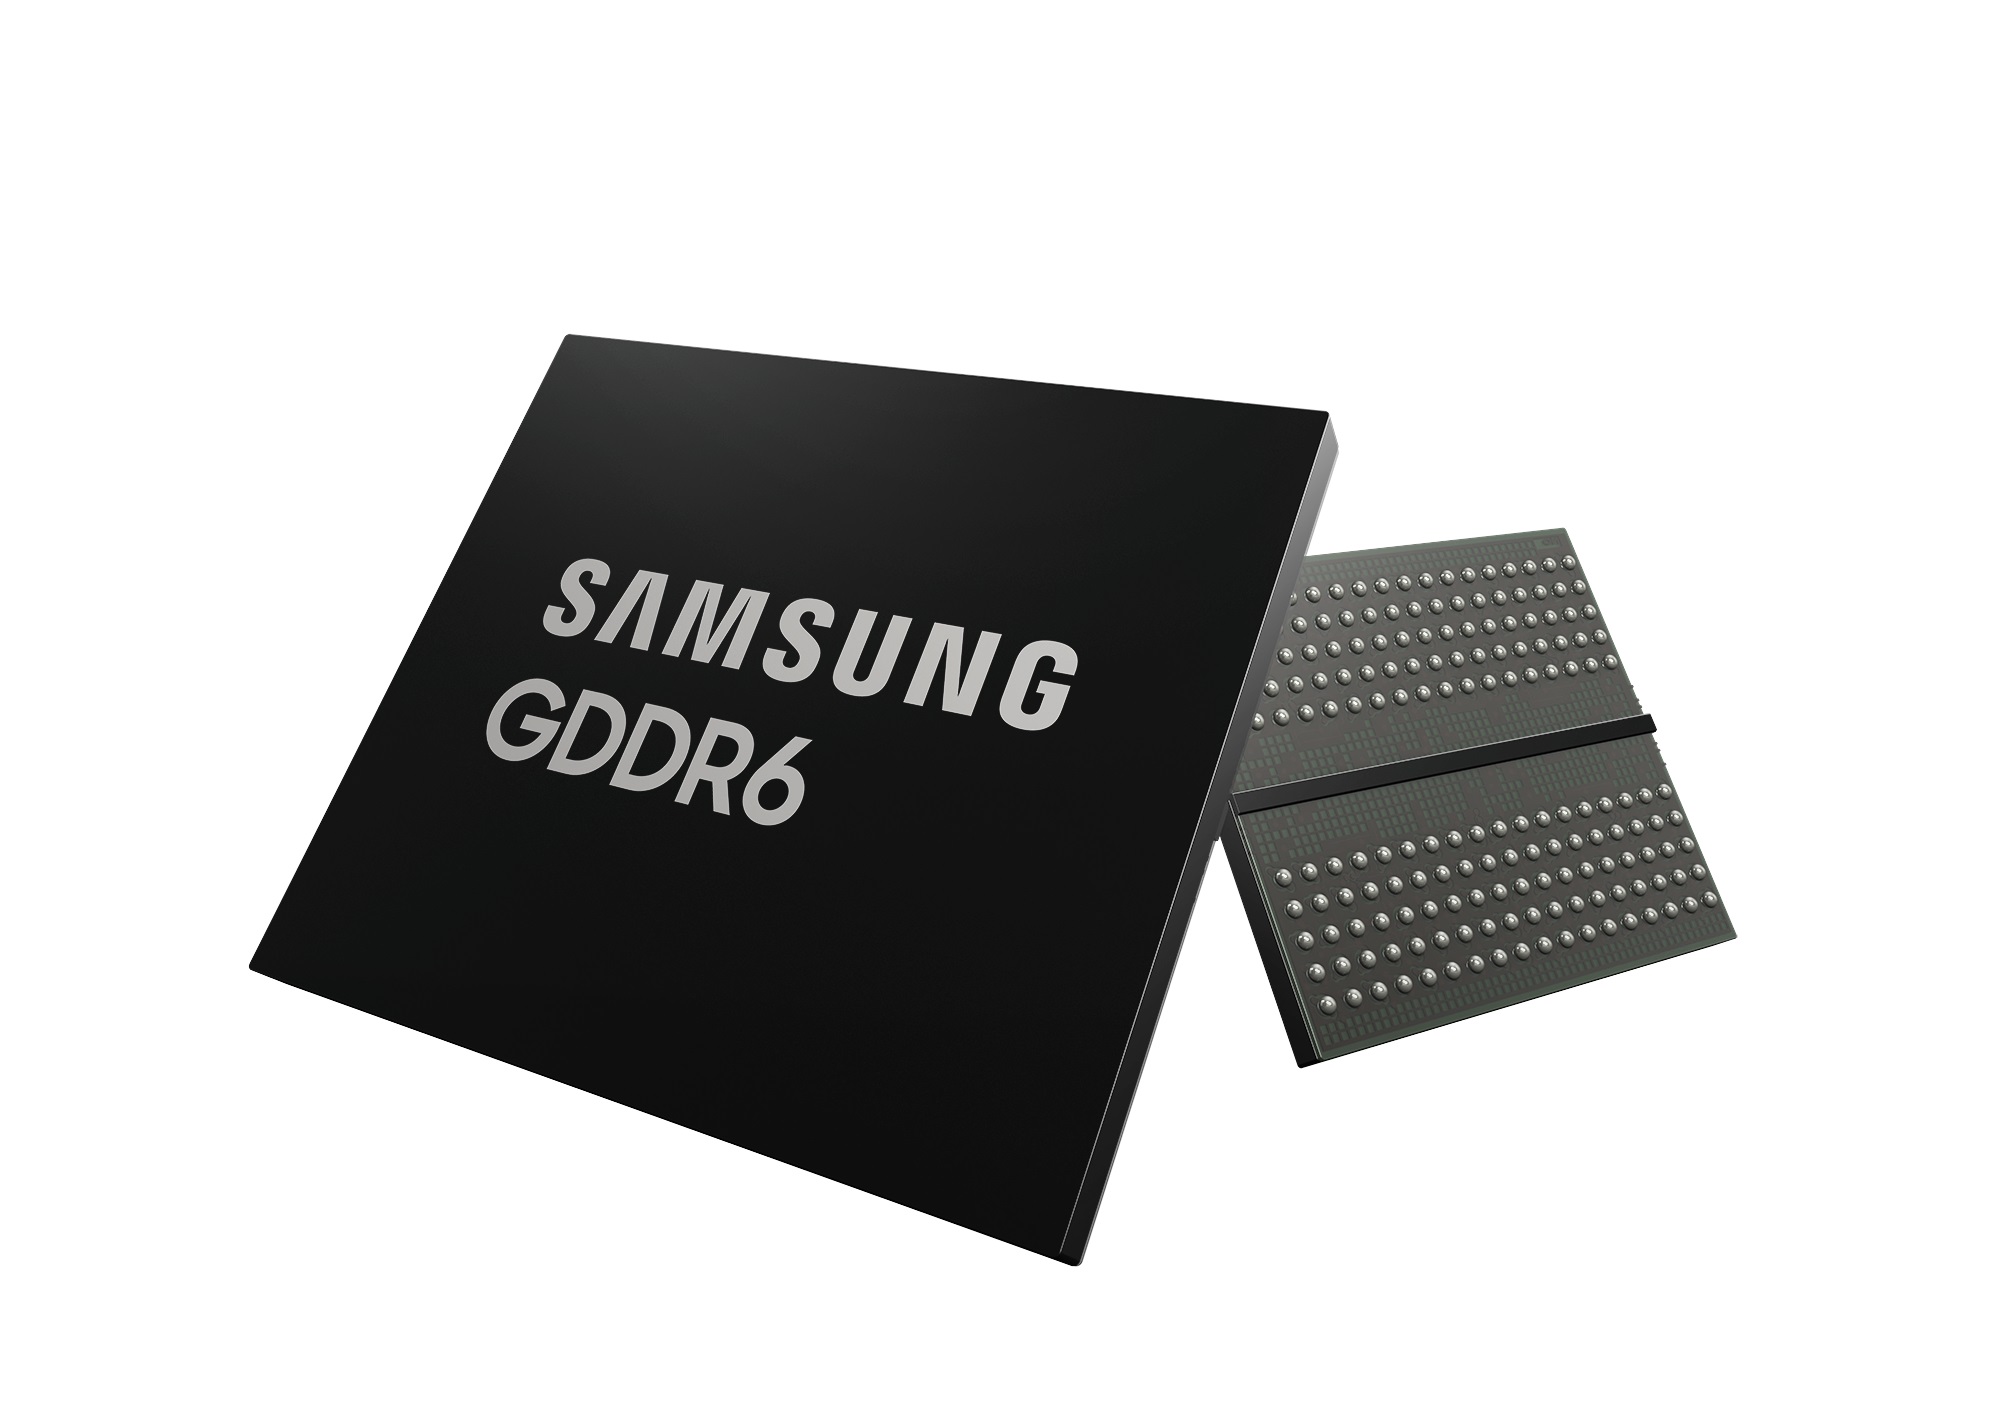 Samsung GDDR6 DRAM, 24 Gbps bellek hızı sunacak